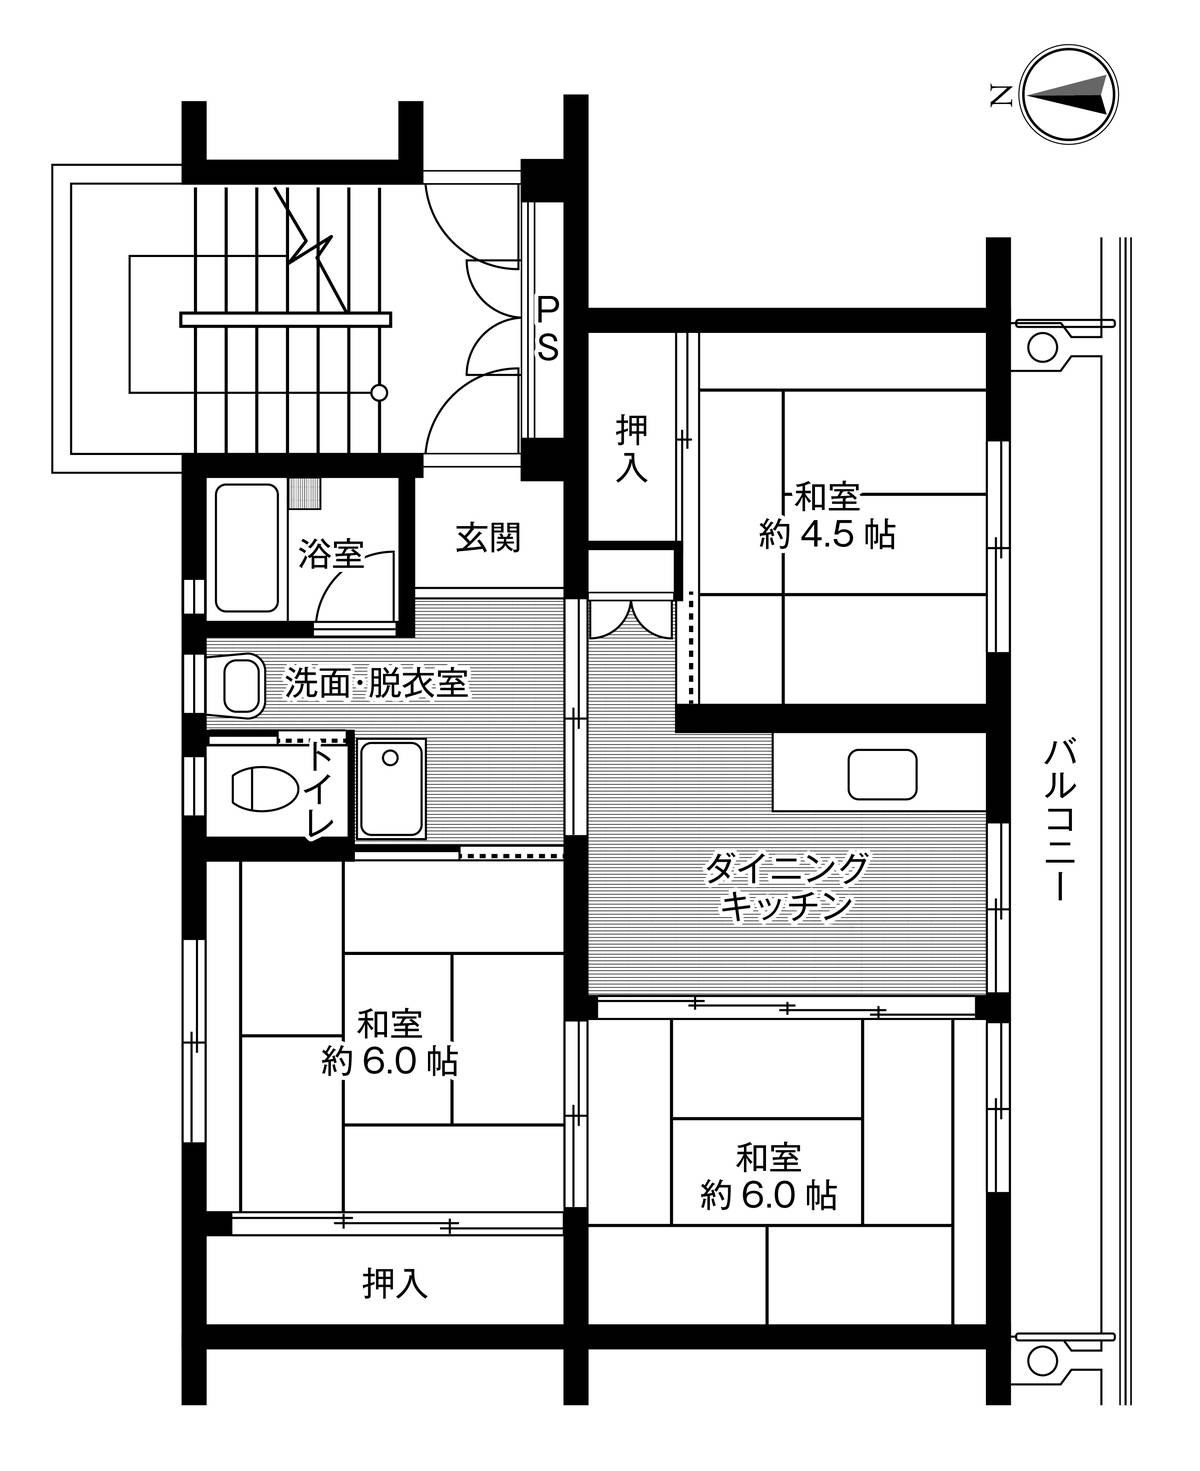 3DK floorplan of Village House Taku in Taku-shi